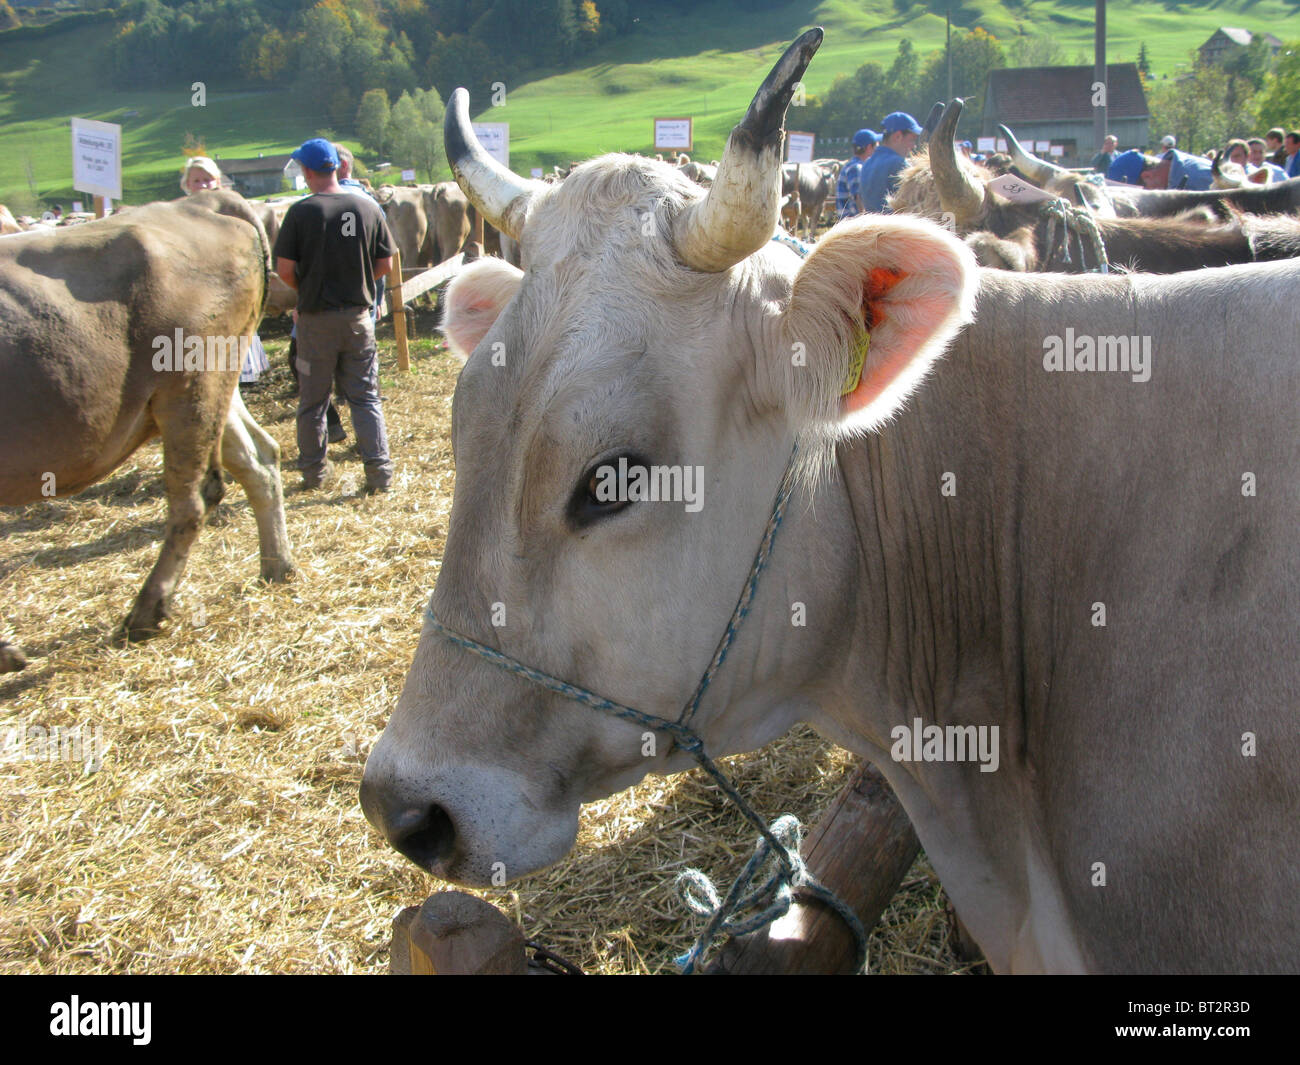 Feria agrícola ganadera vacas Suiza Foto de stock